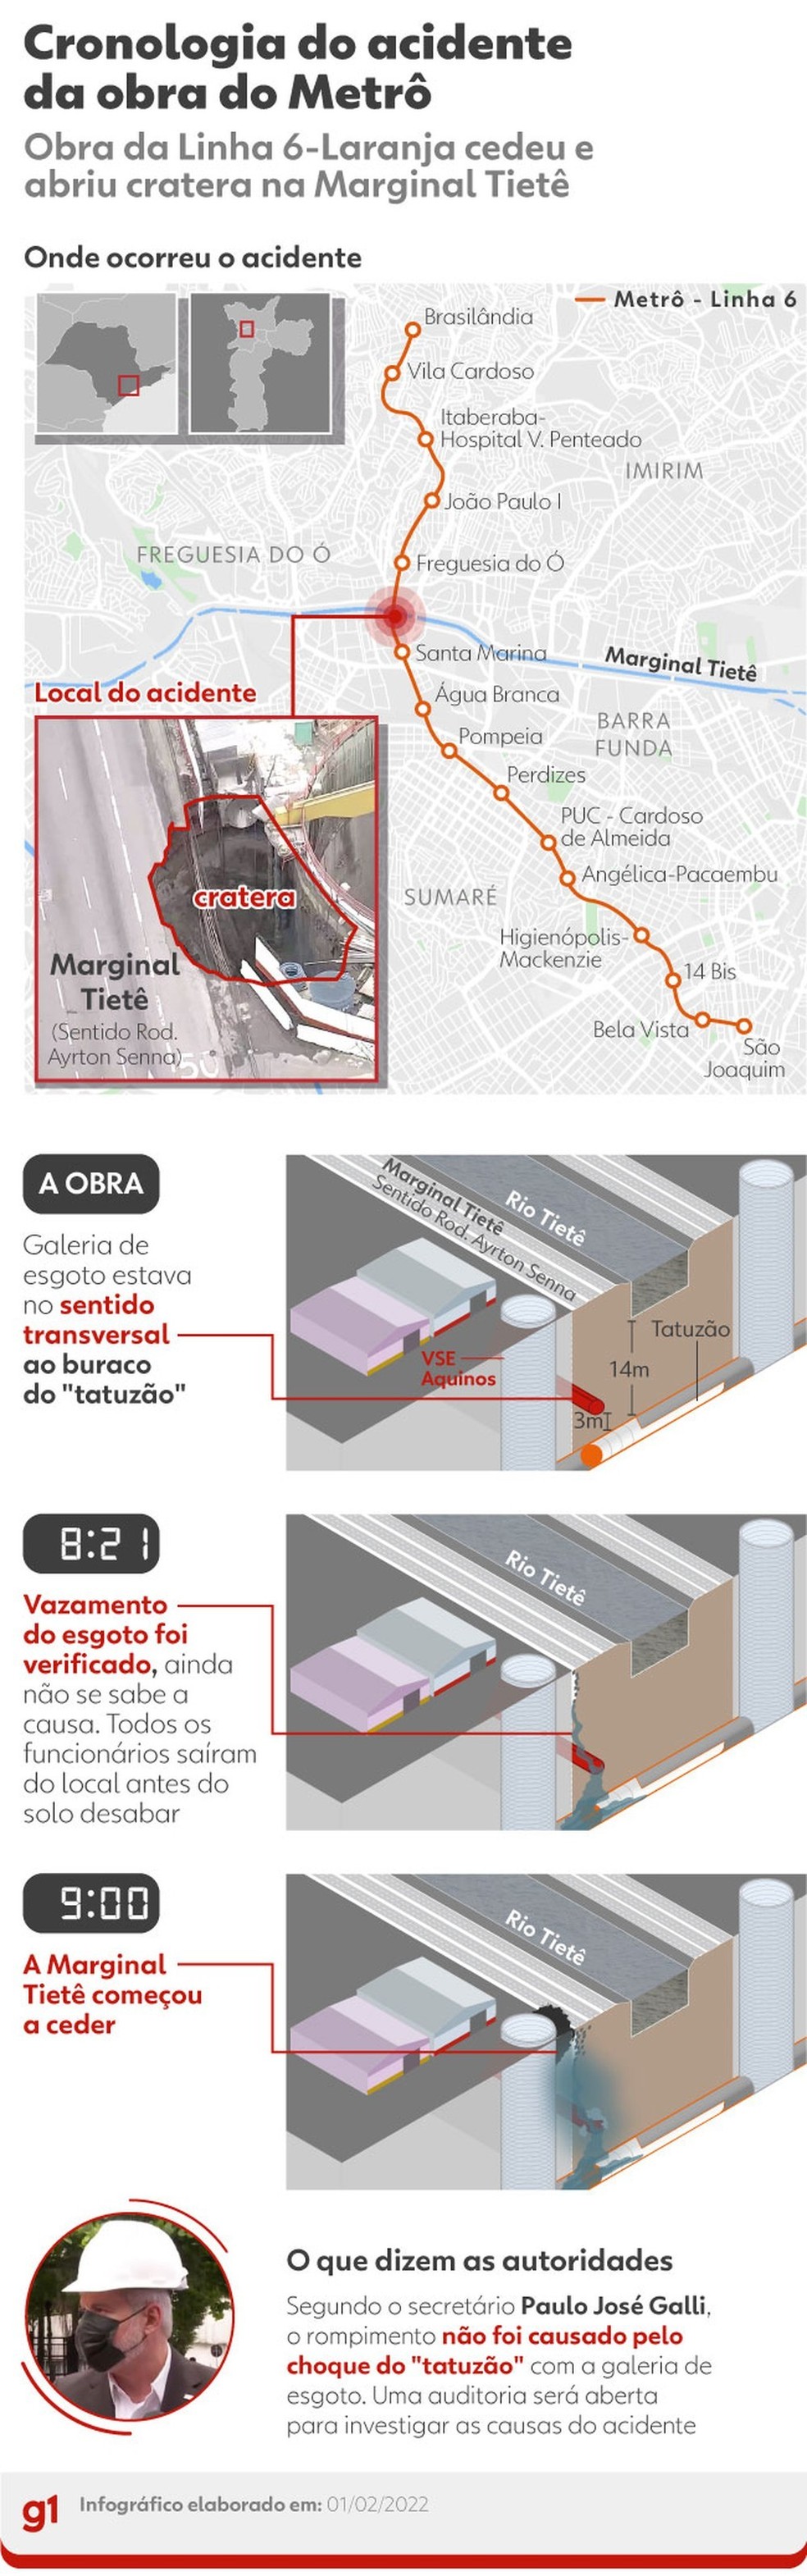 Infográfico mostra a cronologia do acidente na obra do Metrô de SP — Foto: Arte g1